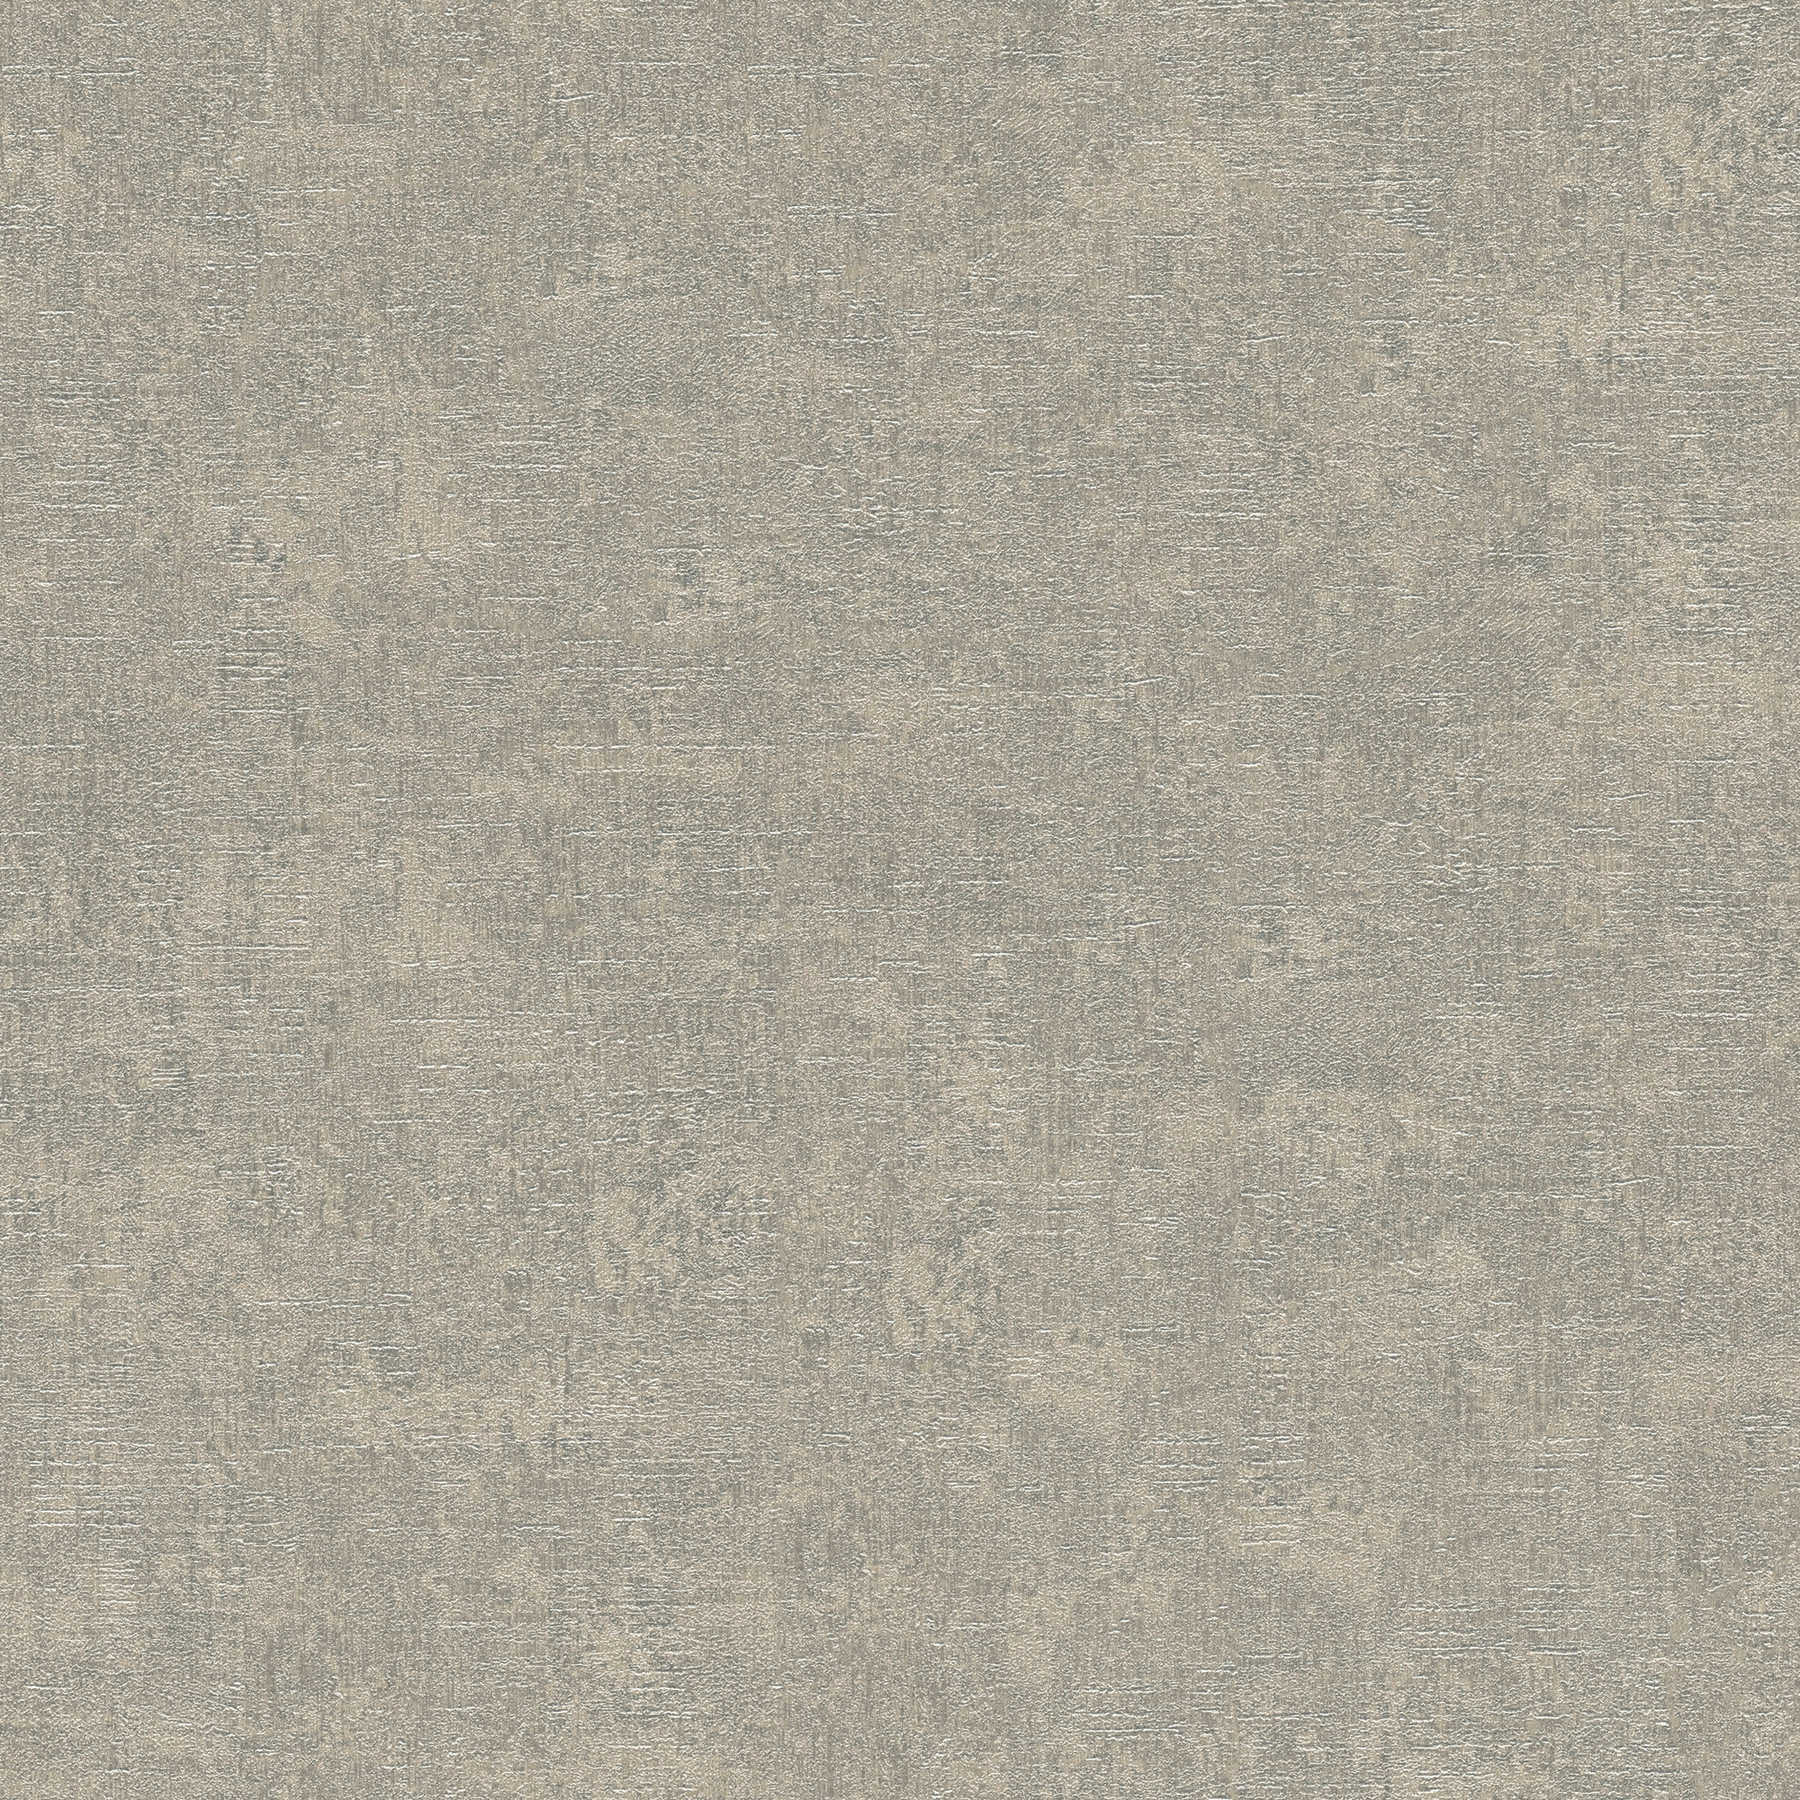 Papier peint uni gris argenté avec aspect crépi béton - beige, gris
